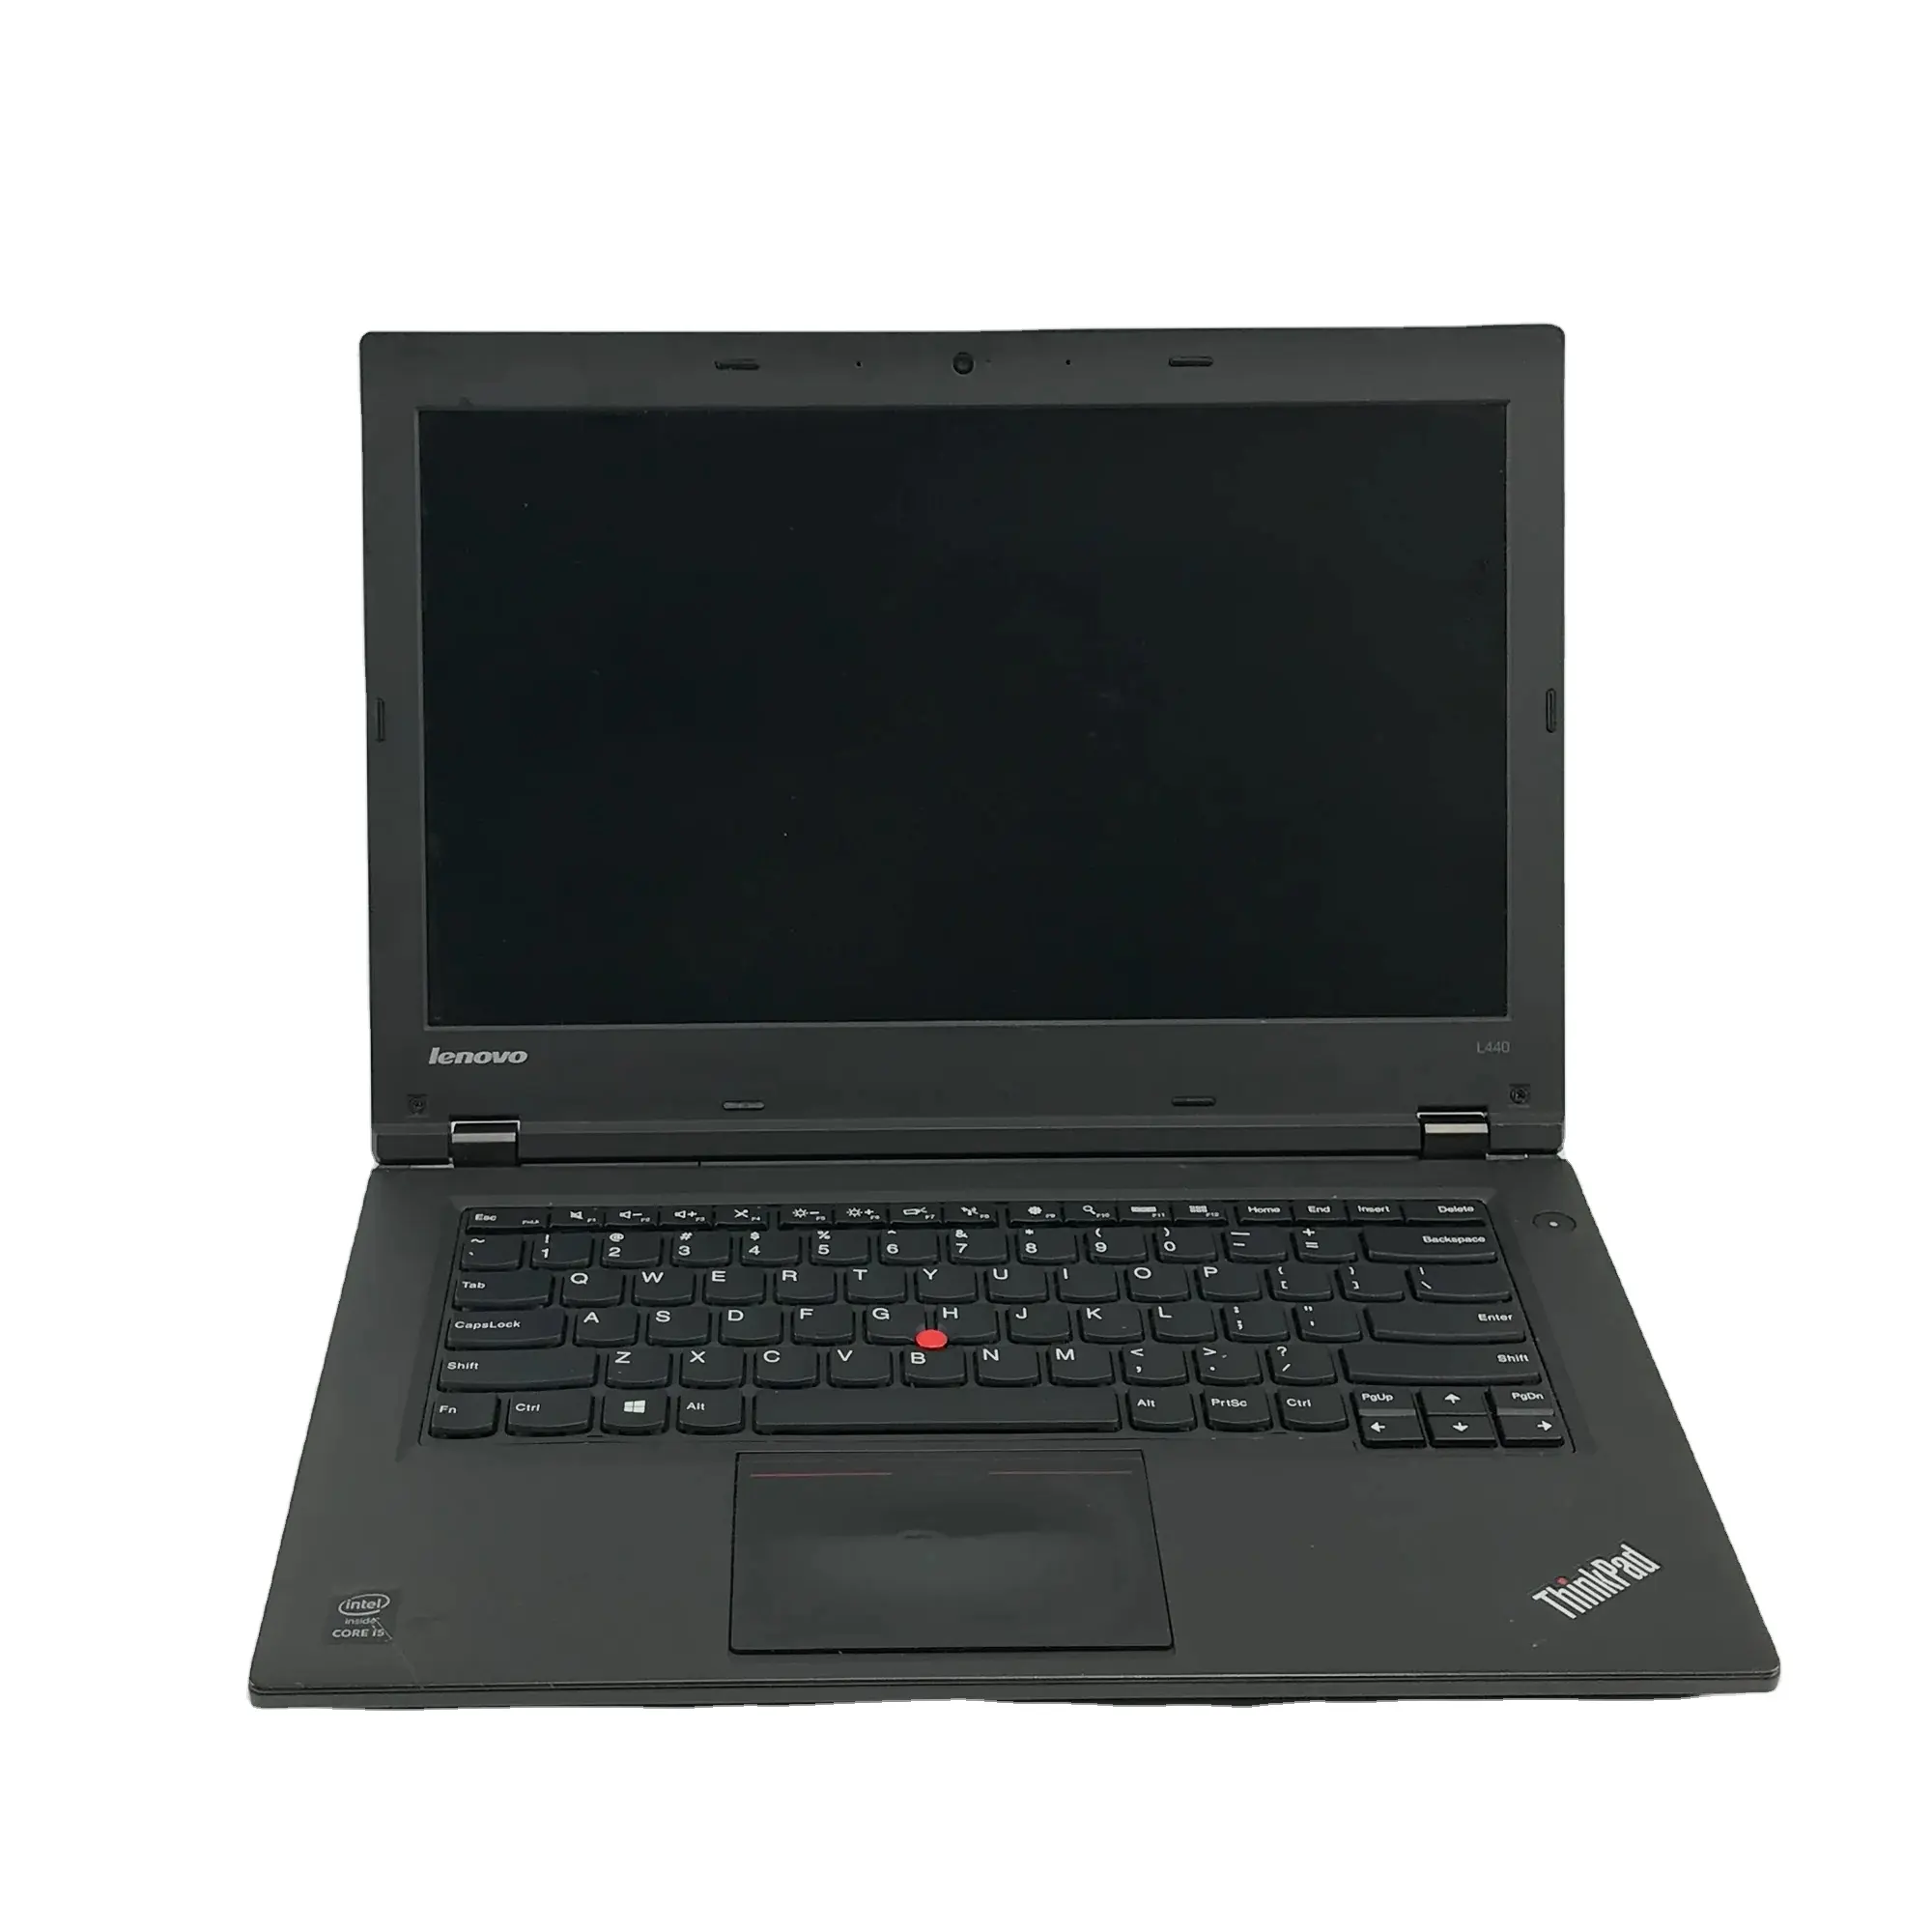 Miglior ThinkPad L440 14 "i5-4200M 2.6GHz 4GB RAM 500GB HDD laptop ideali per le migliori opzioni di calcolo da noi